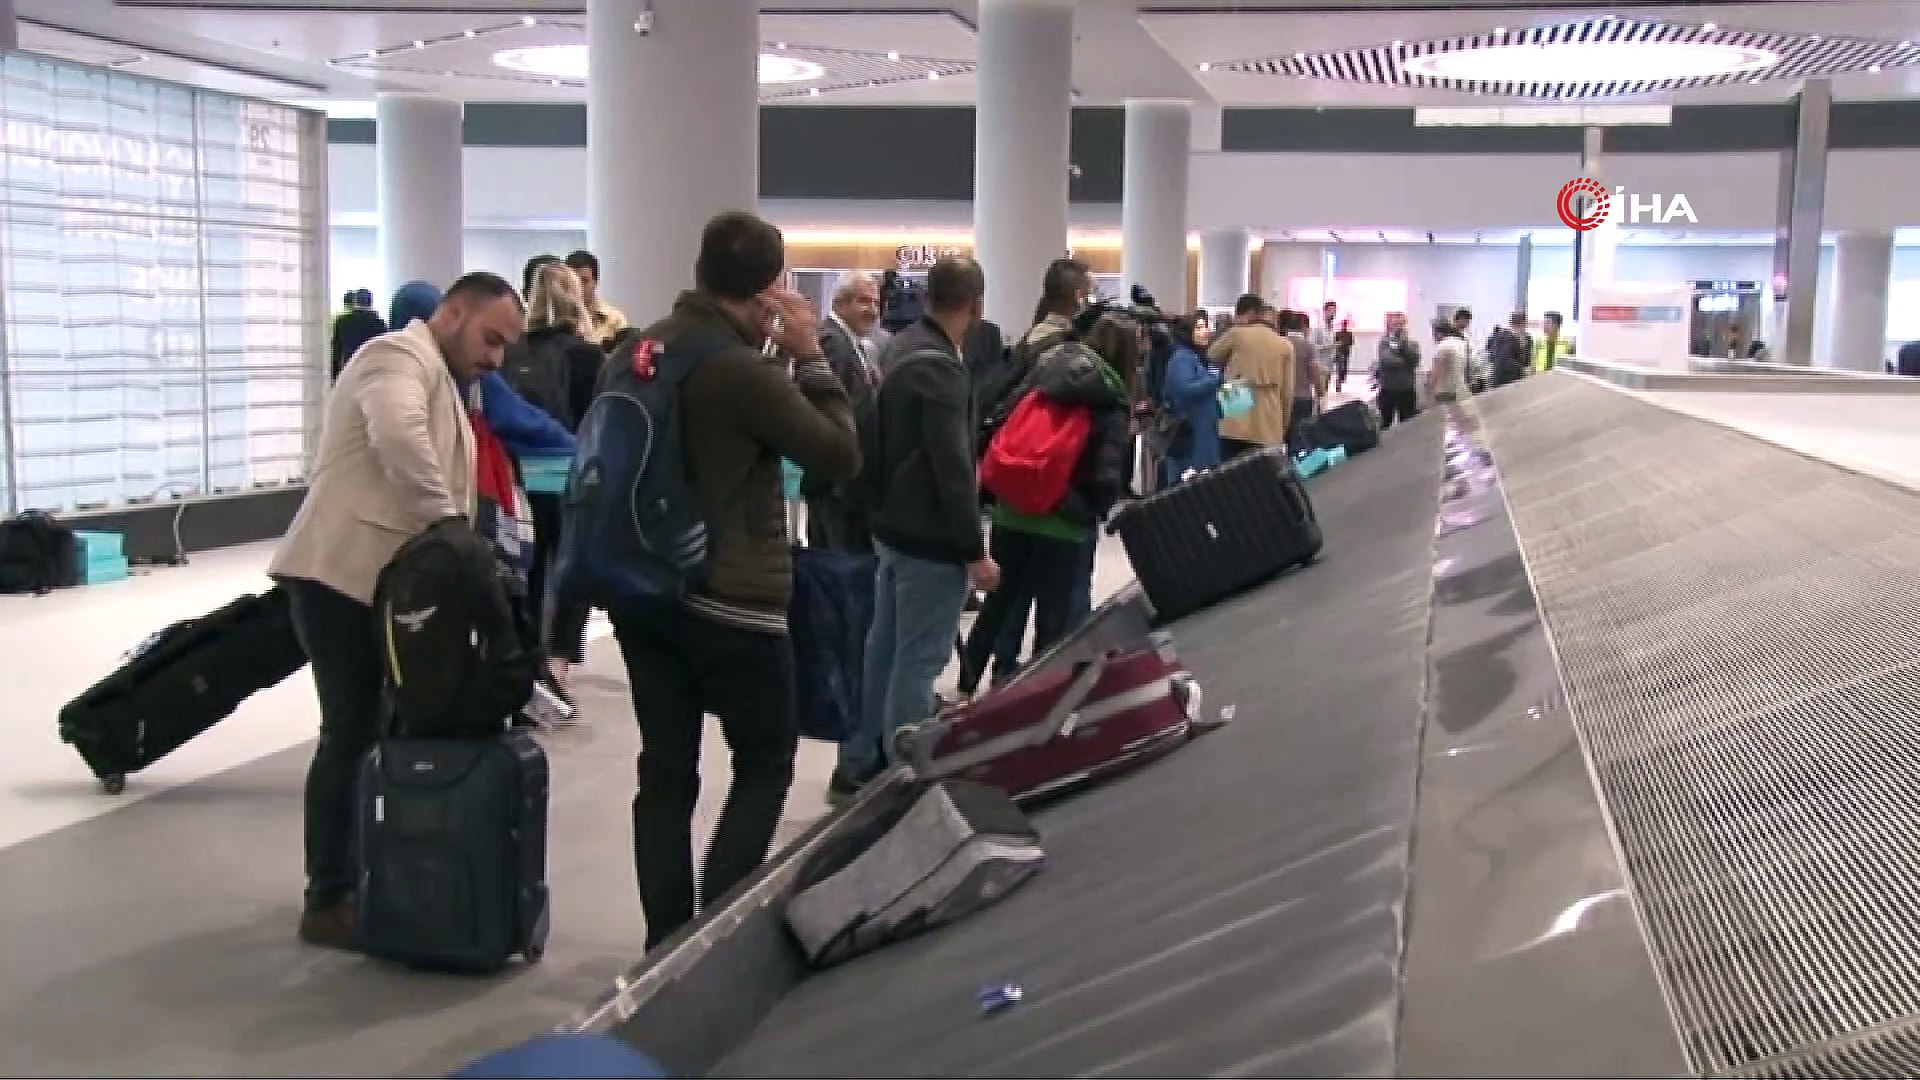 istanbul havalimani nda taksim den tuzla ya gidecek uzunlukta bagaj sistemi dailymotion video